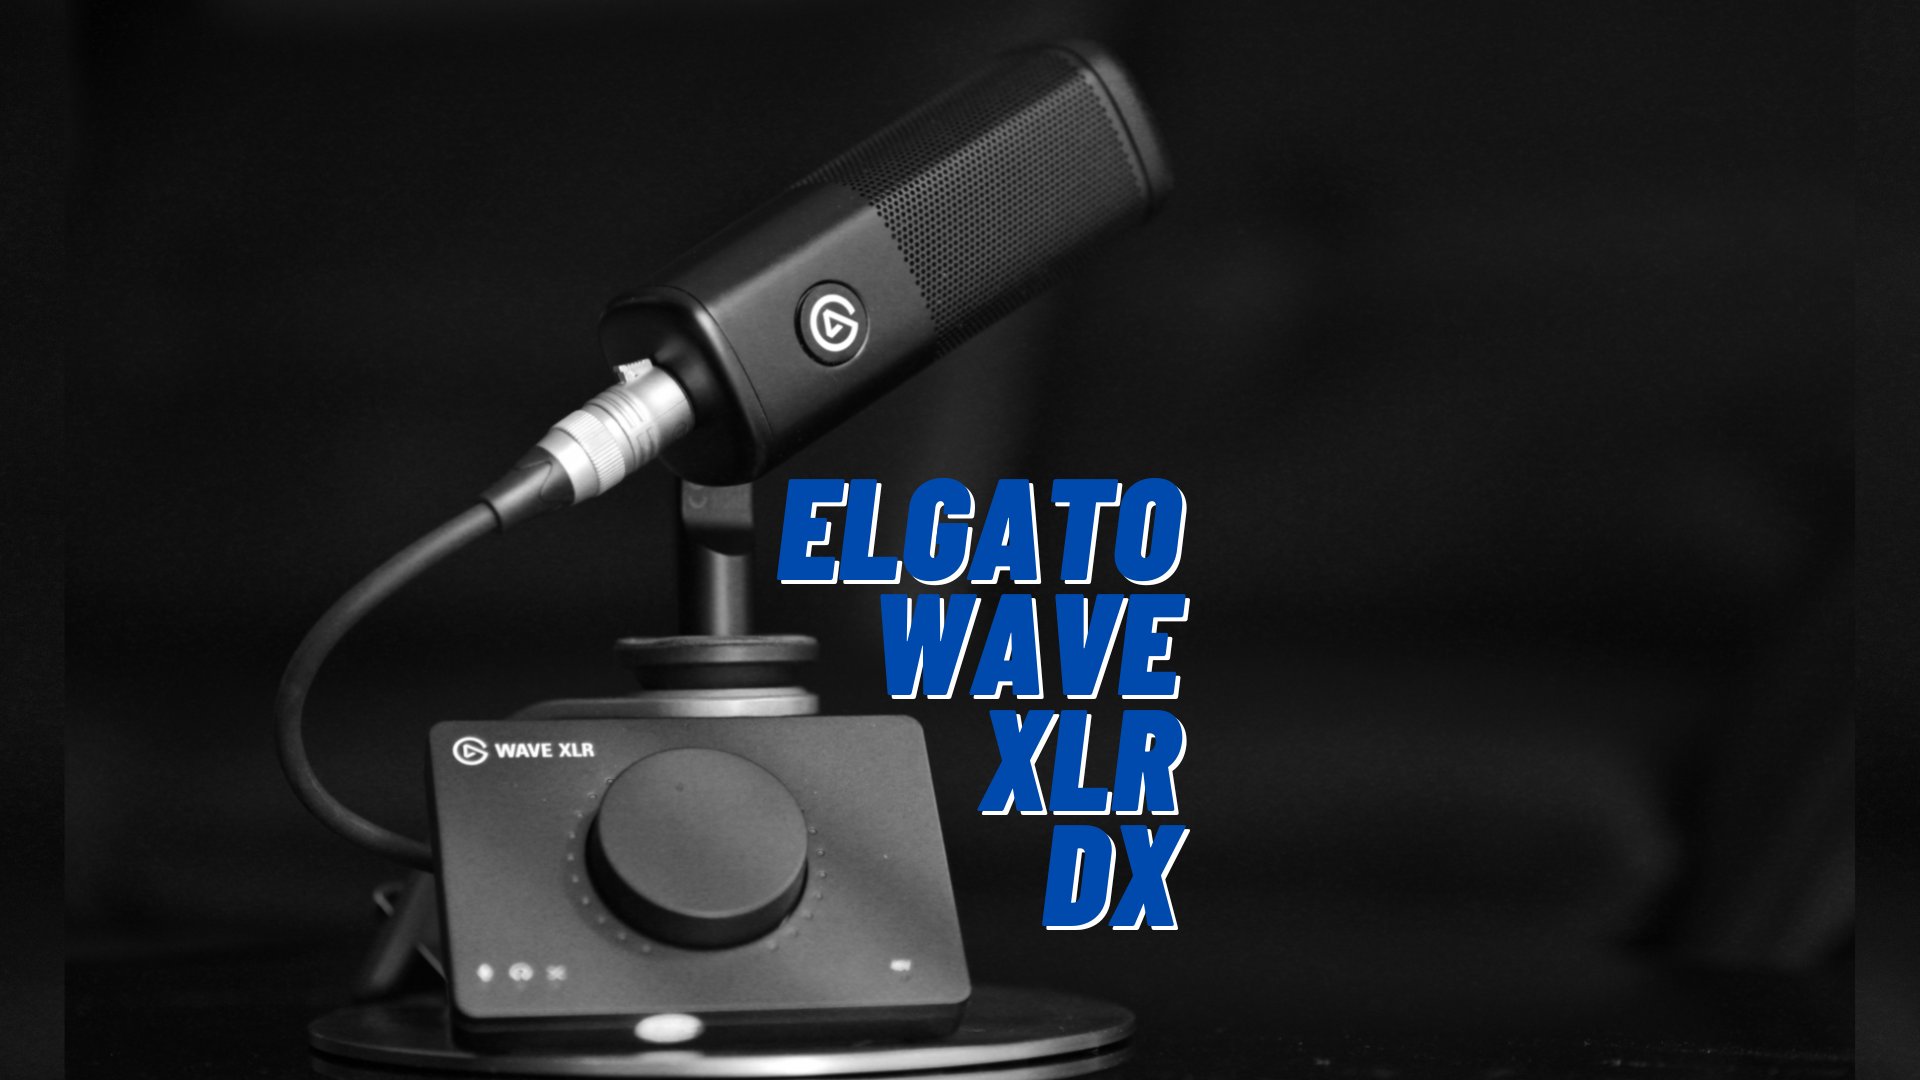 ELGATO ra mắt WAVE DX Dynamic Microphone dùng chung với Wave XLR